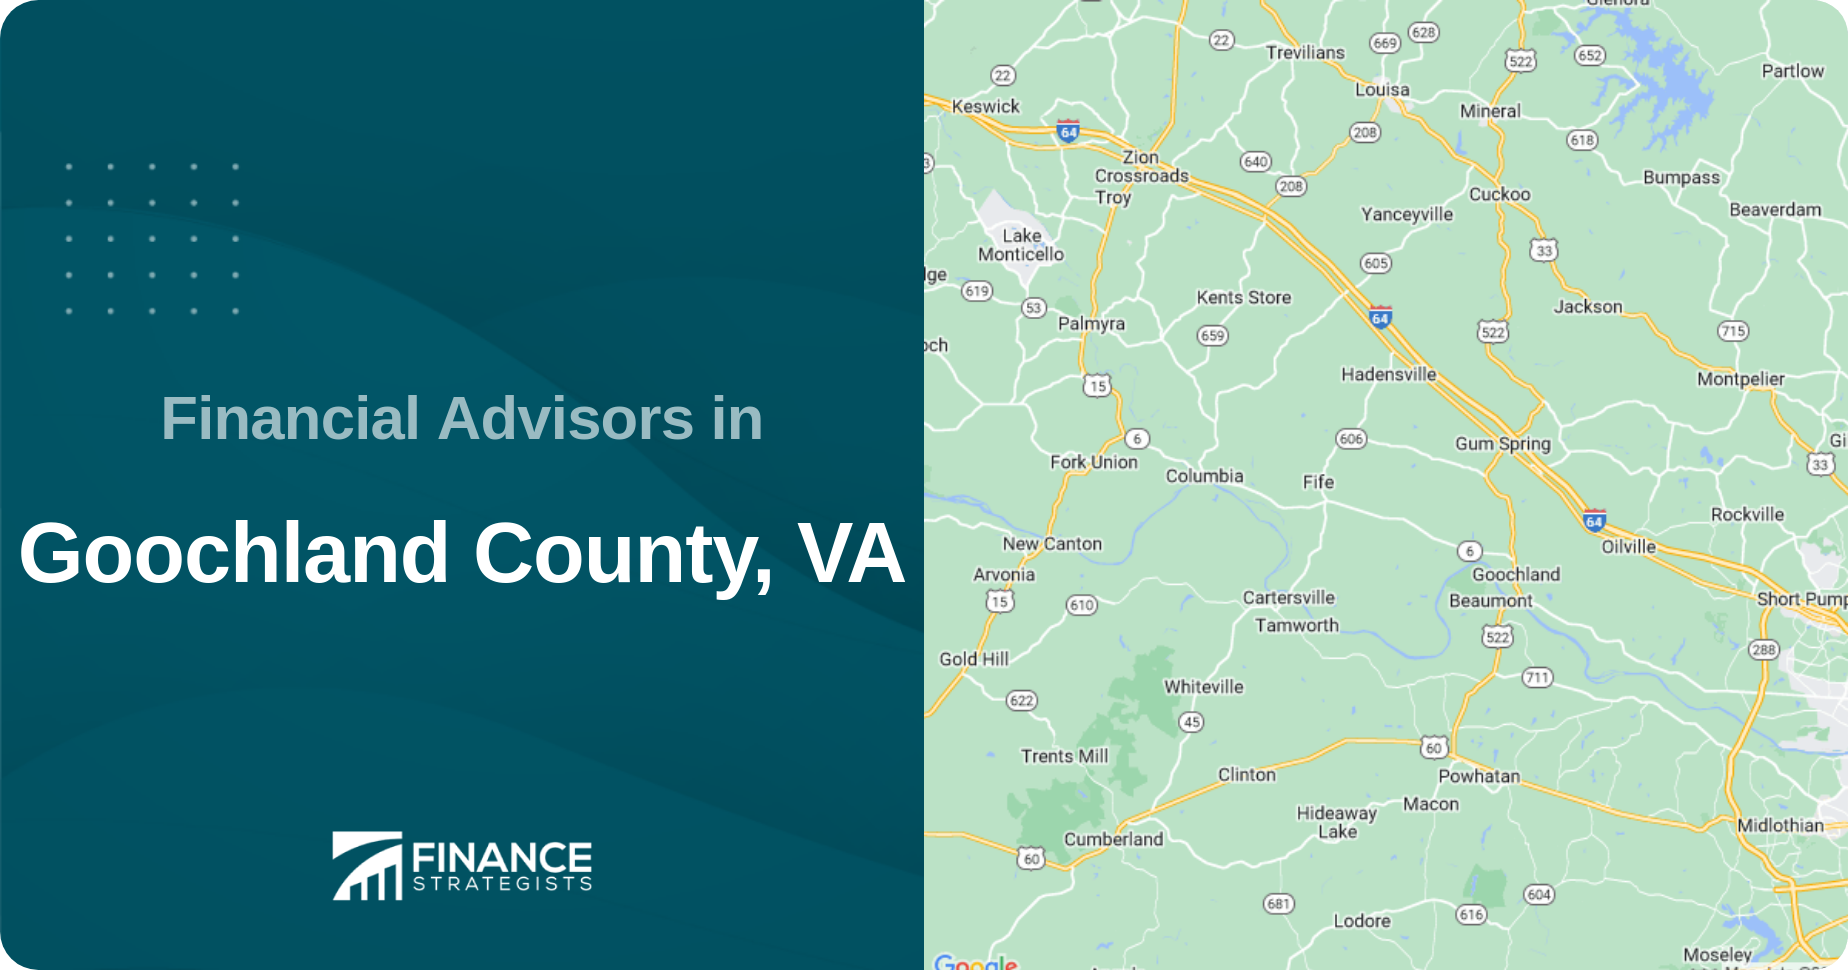 Financial Advisors in Goochland County, VA